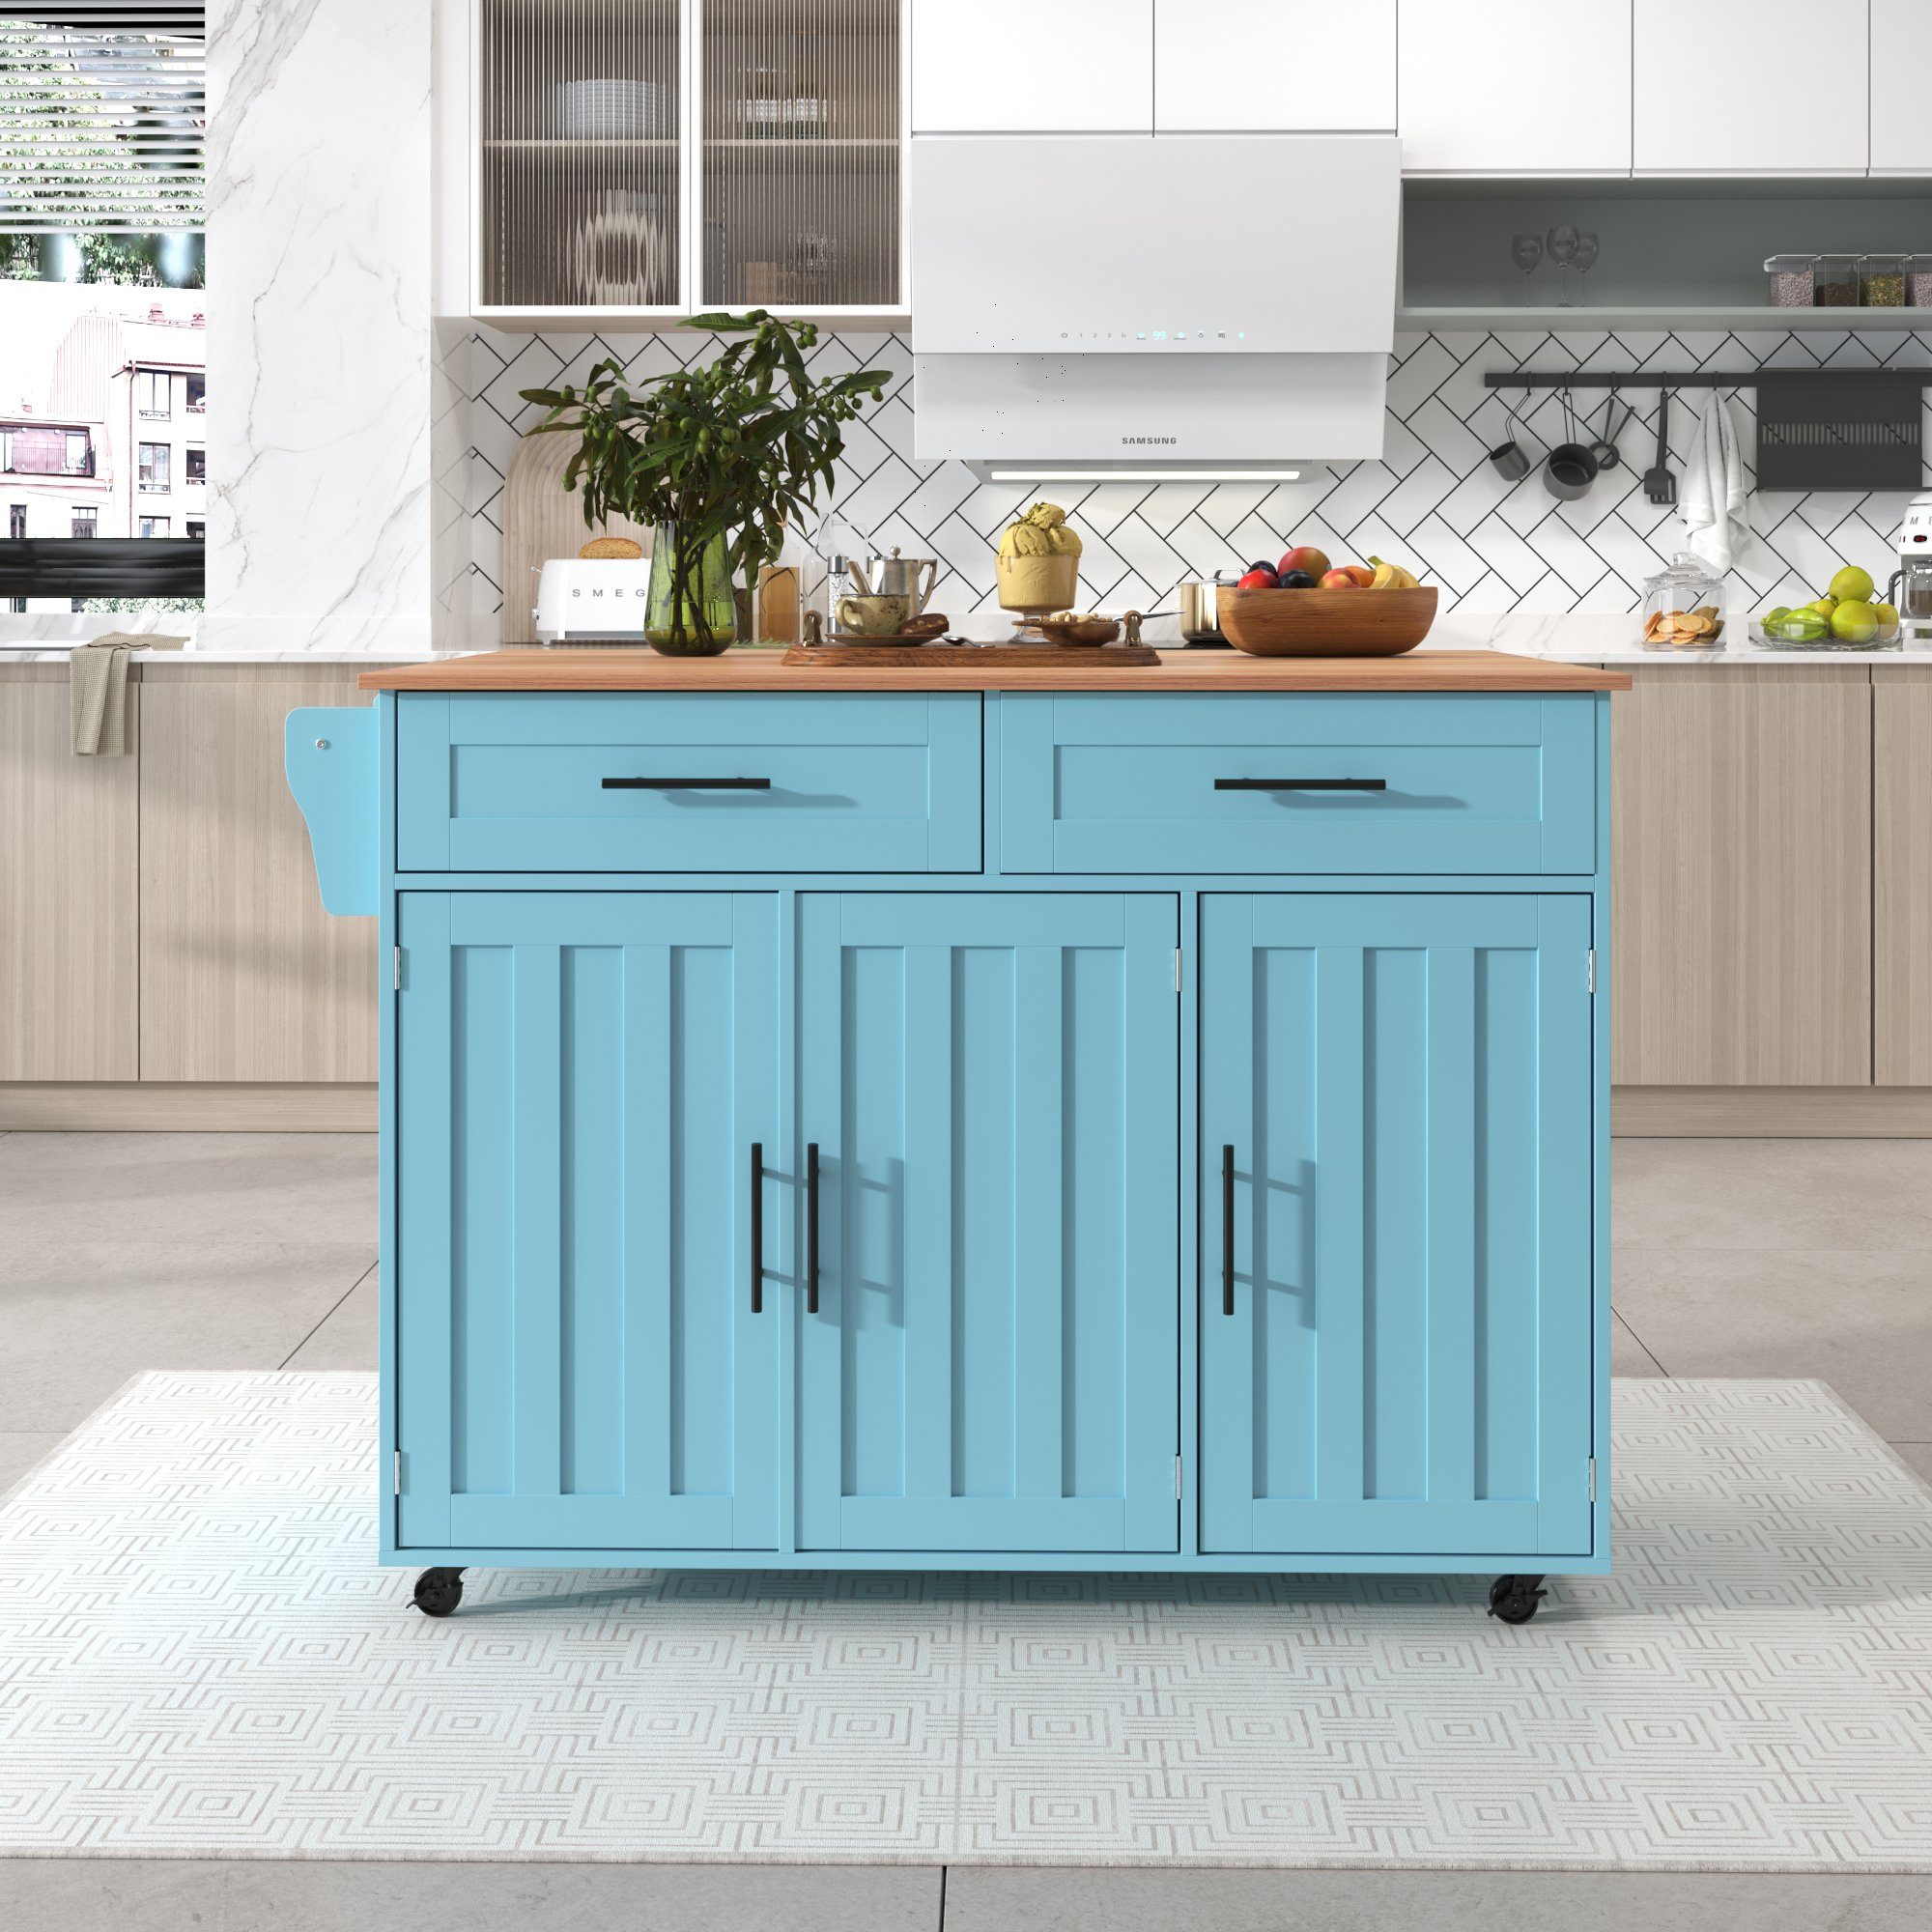 GLIESE Küchenbuffet Anrichte mit Blau Esstischwagen / Klapptischplatte